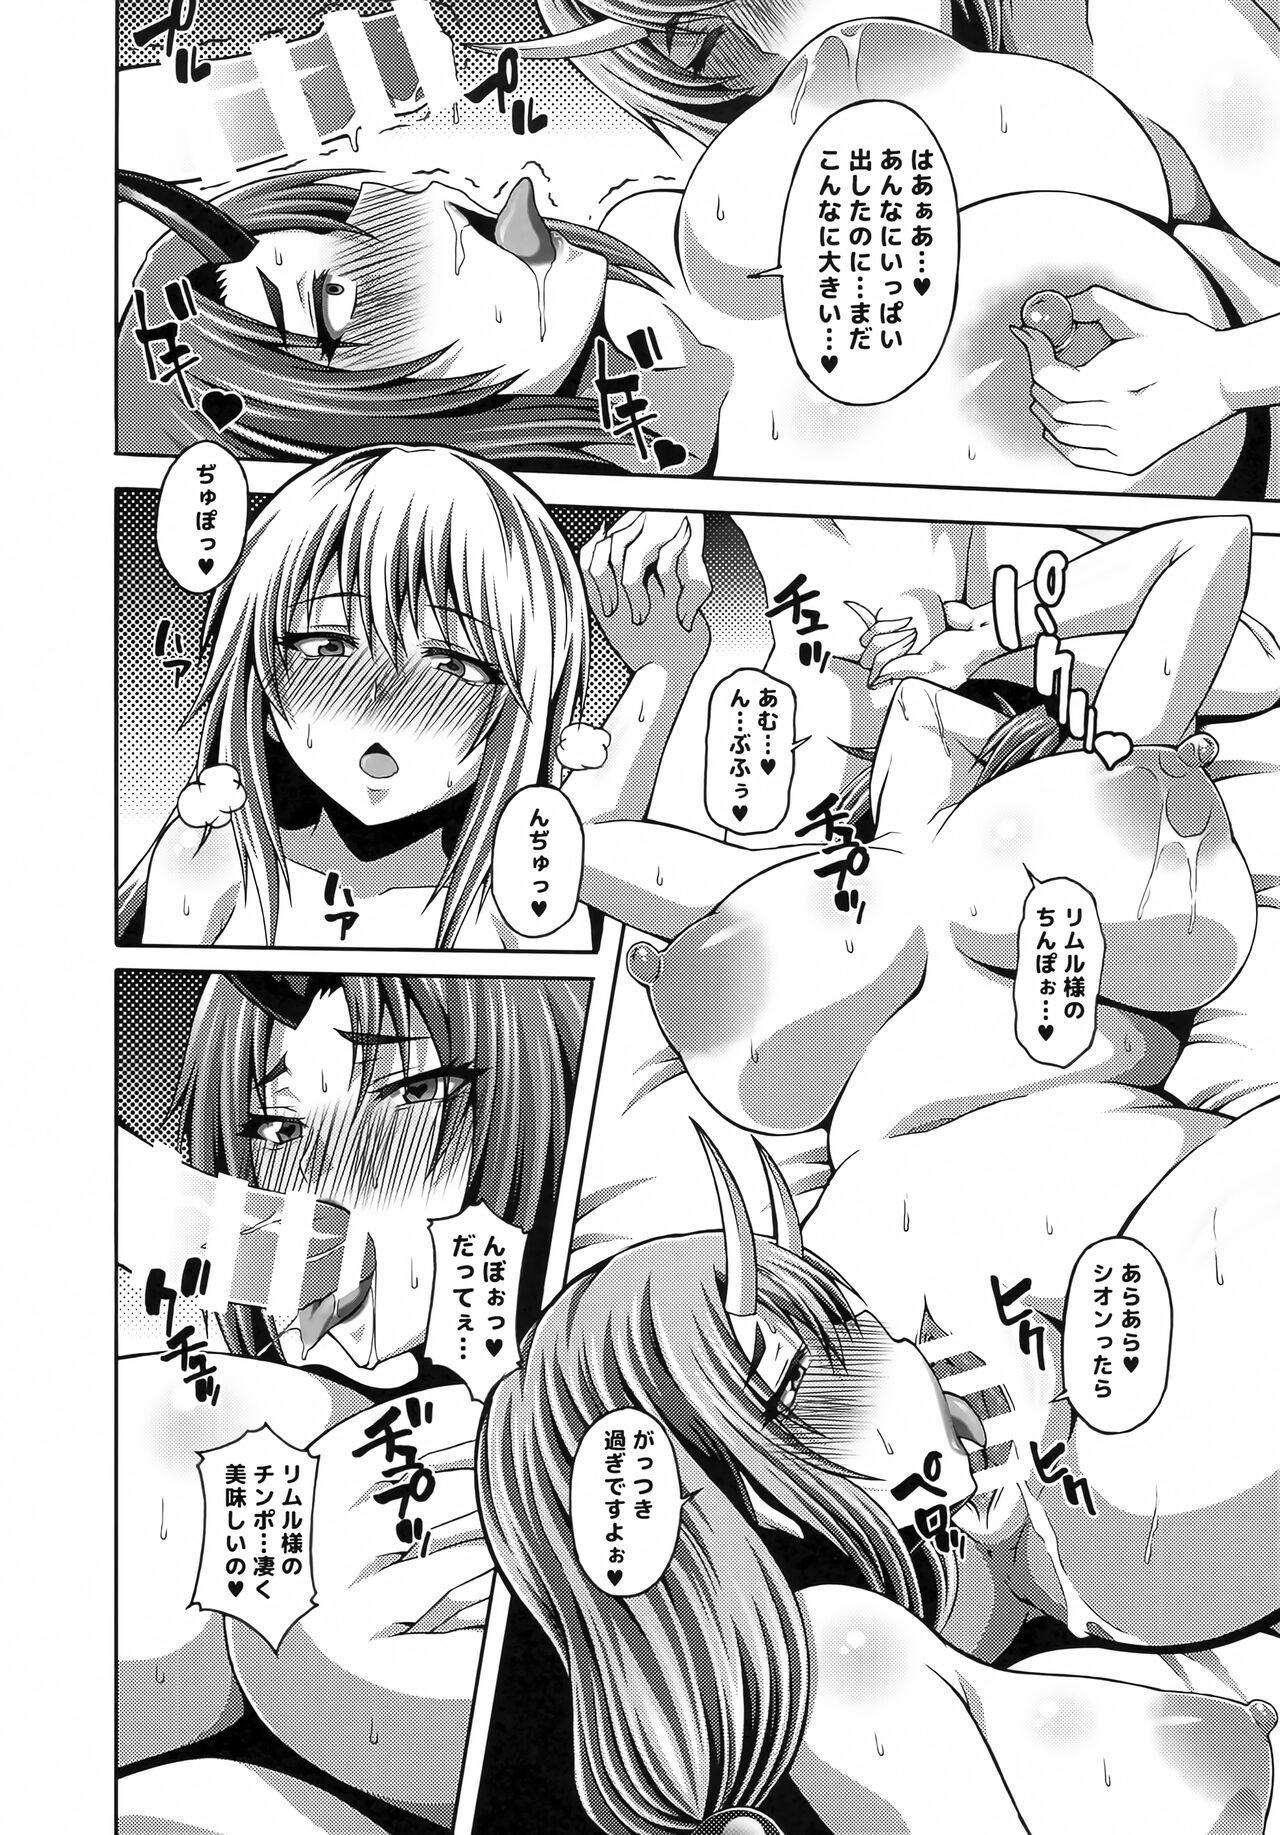 Fun Tensei Harem Nikki 2 - Tensei shitara slime datta ken Men - Page 7